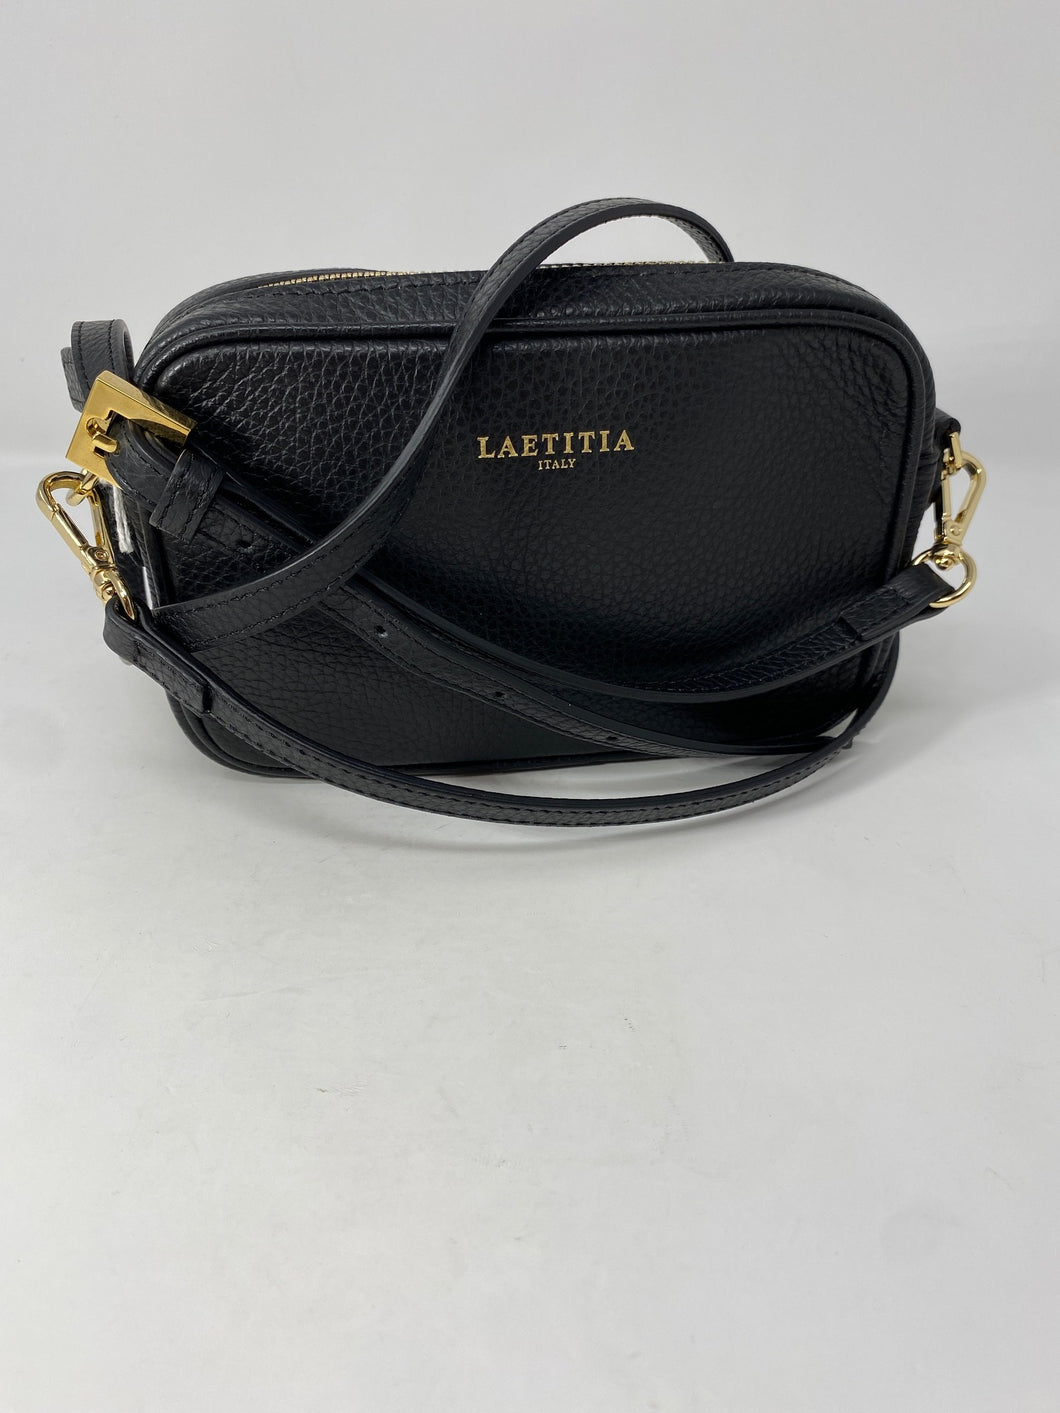 Petite Cross Body Handbag by Laetitia